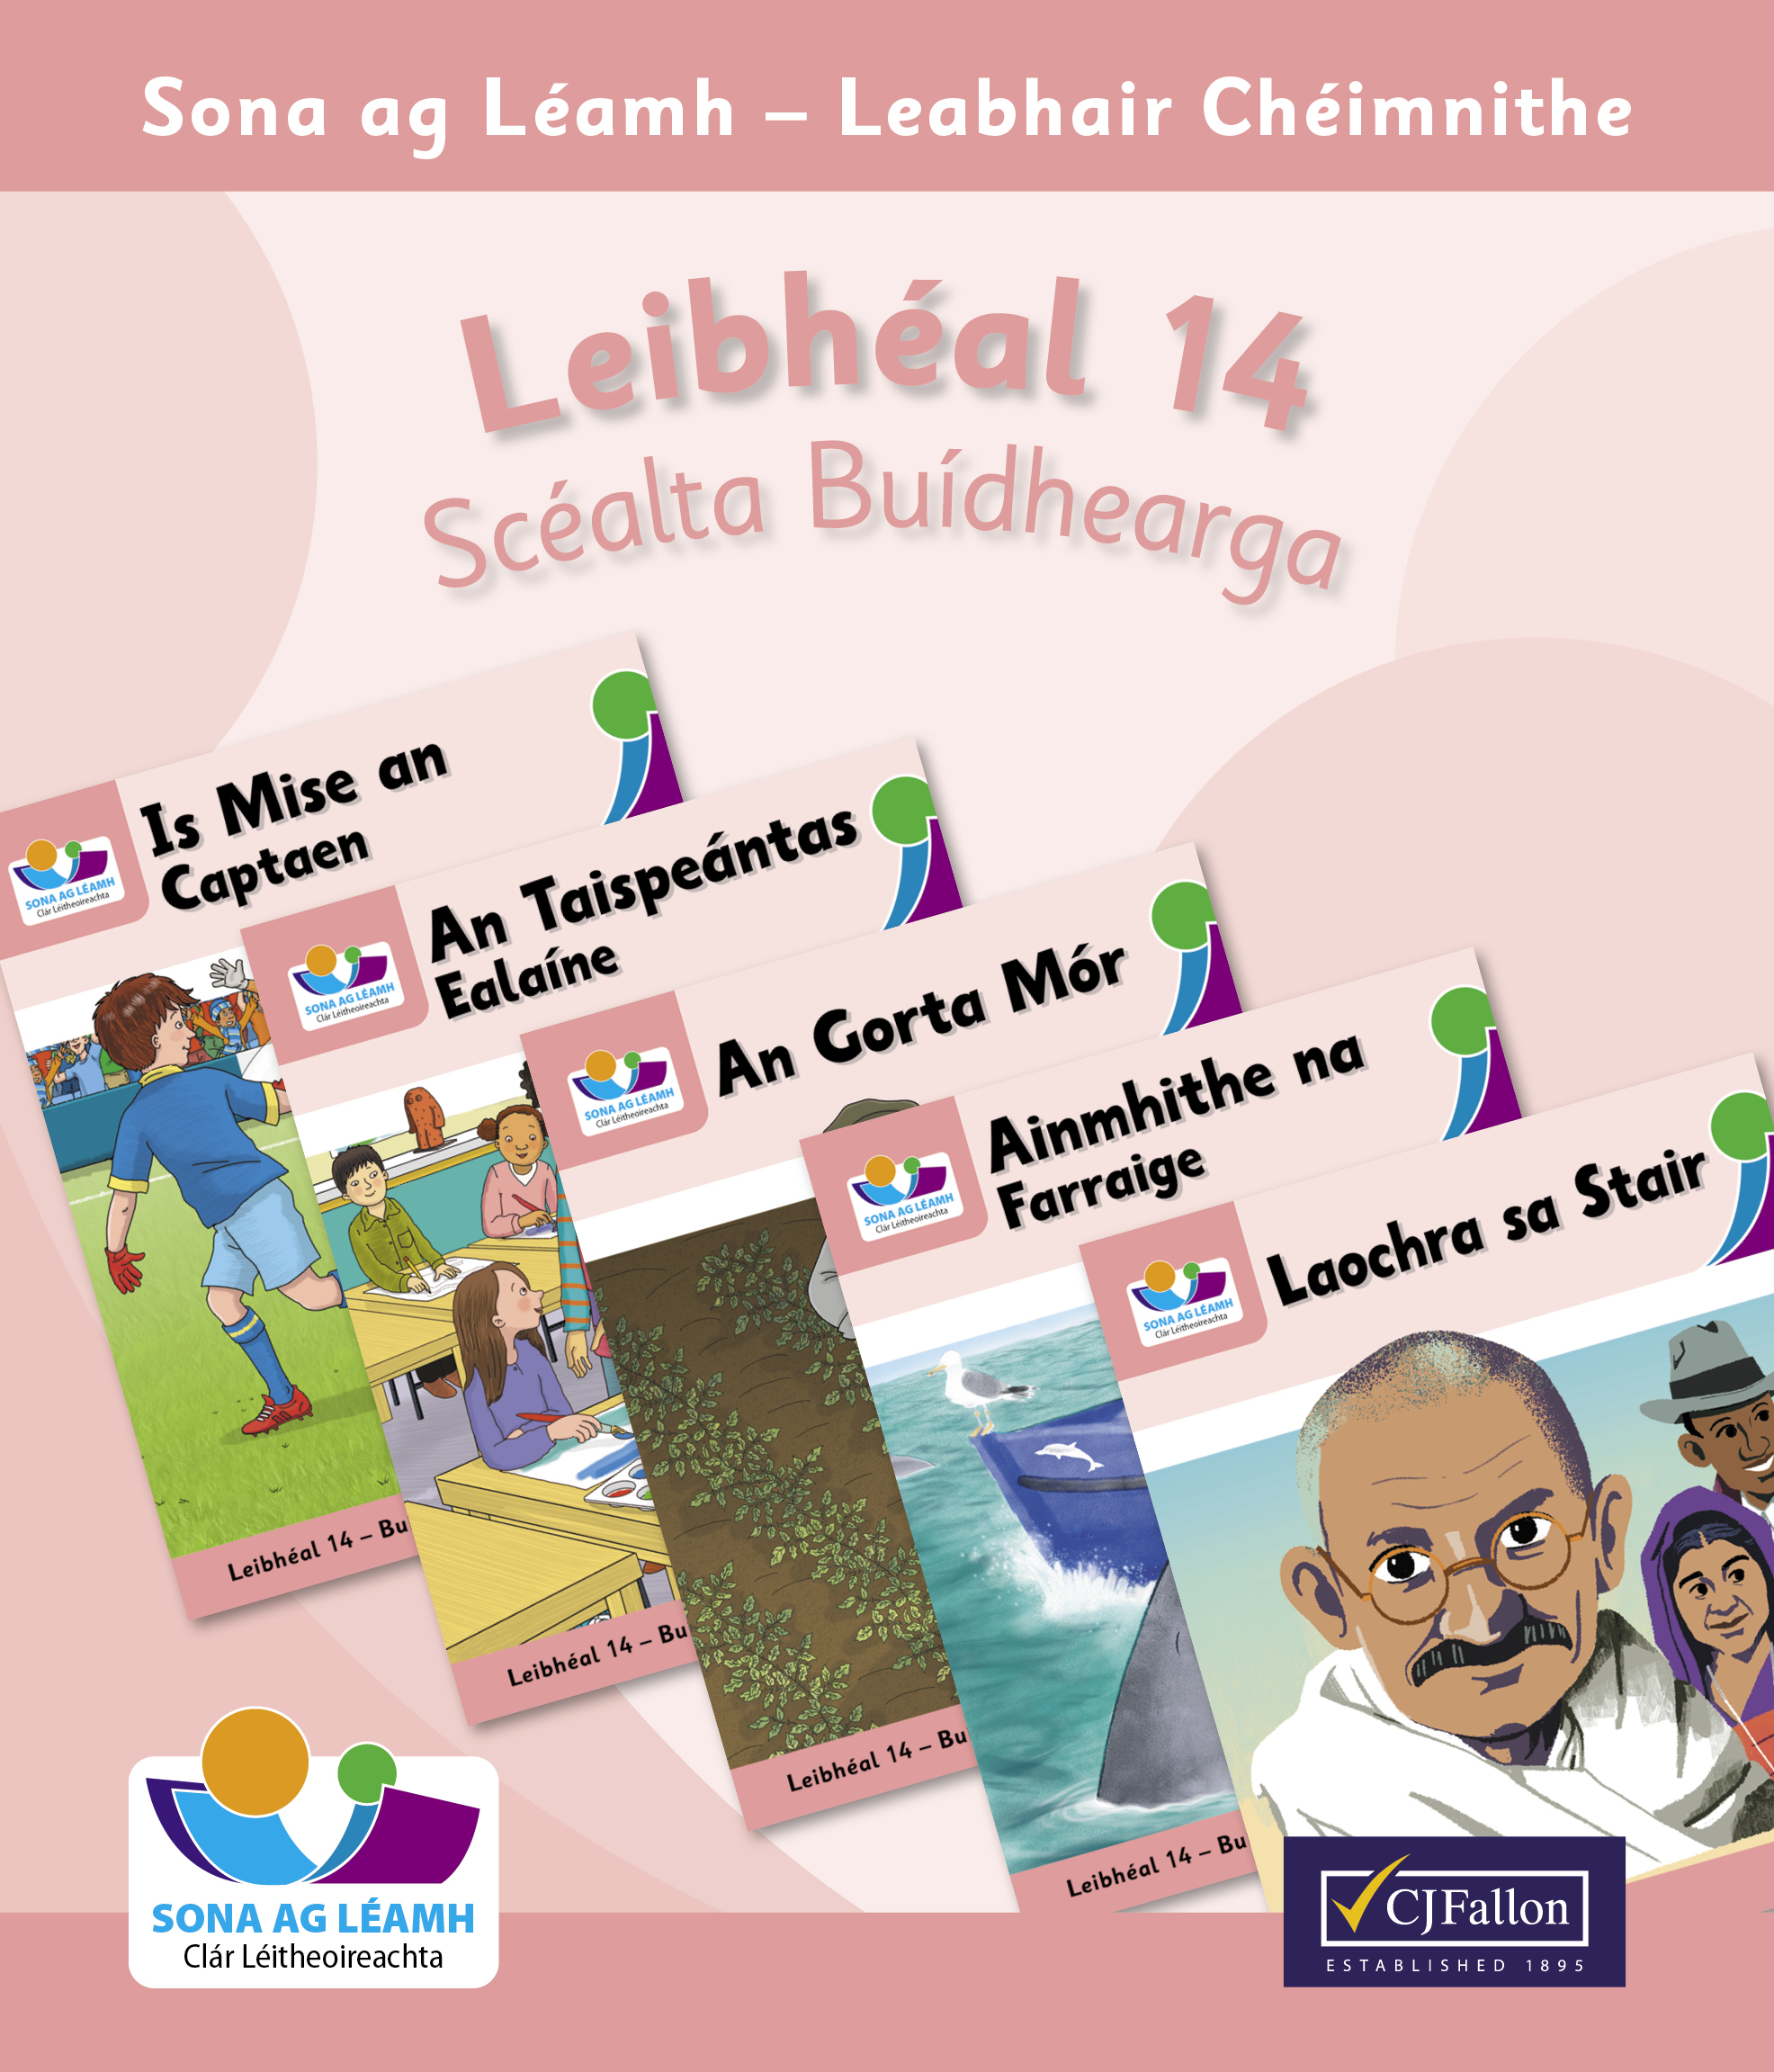 Leibhéal 14 – Scéalta Buídhearga